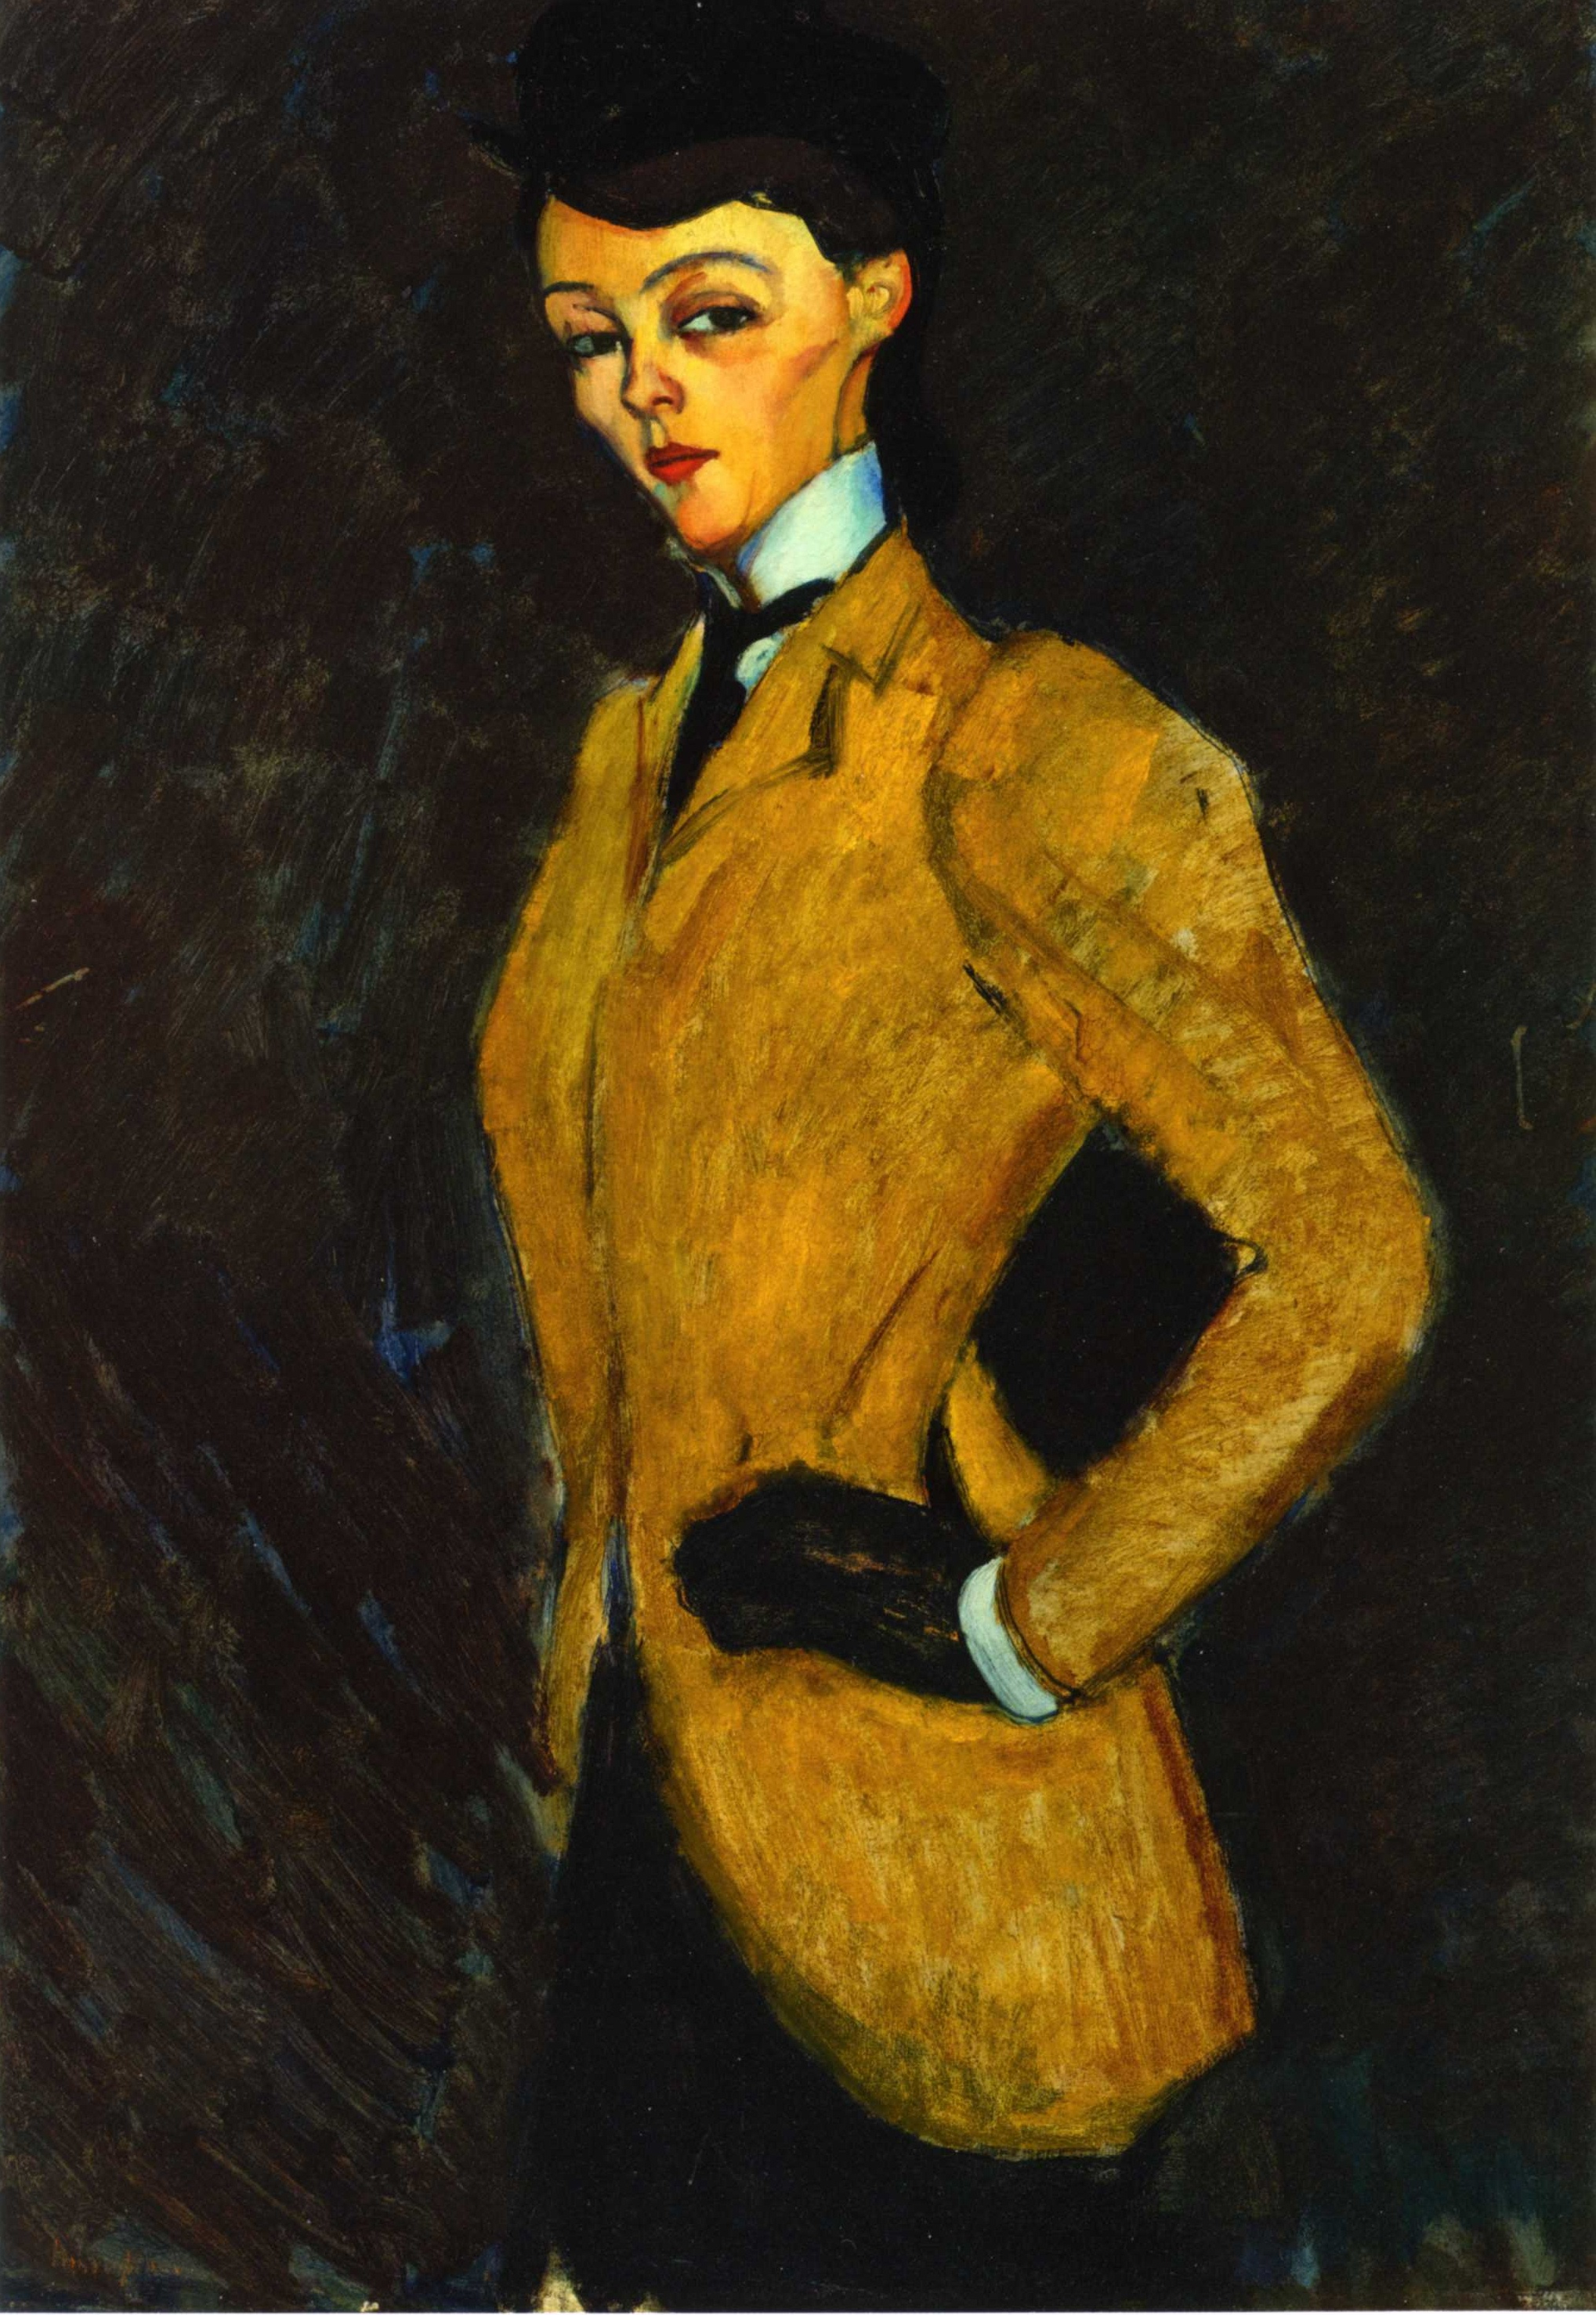 騎馬服の女 by Amedeo Modigliani - 1909年 - 92 x 65.6 cm 